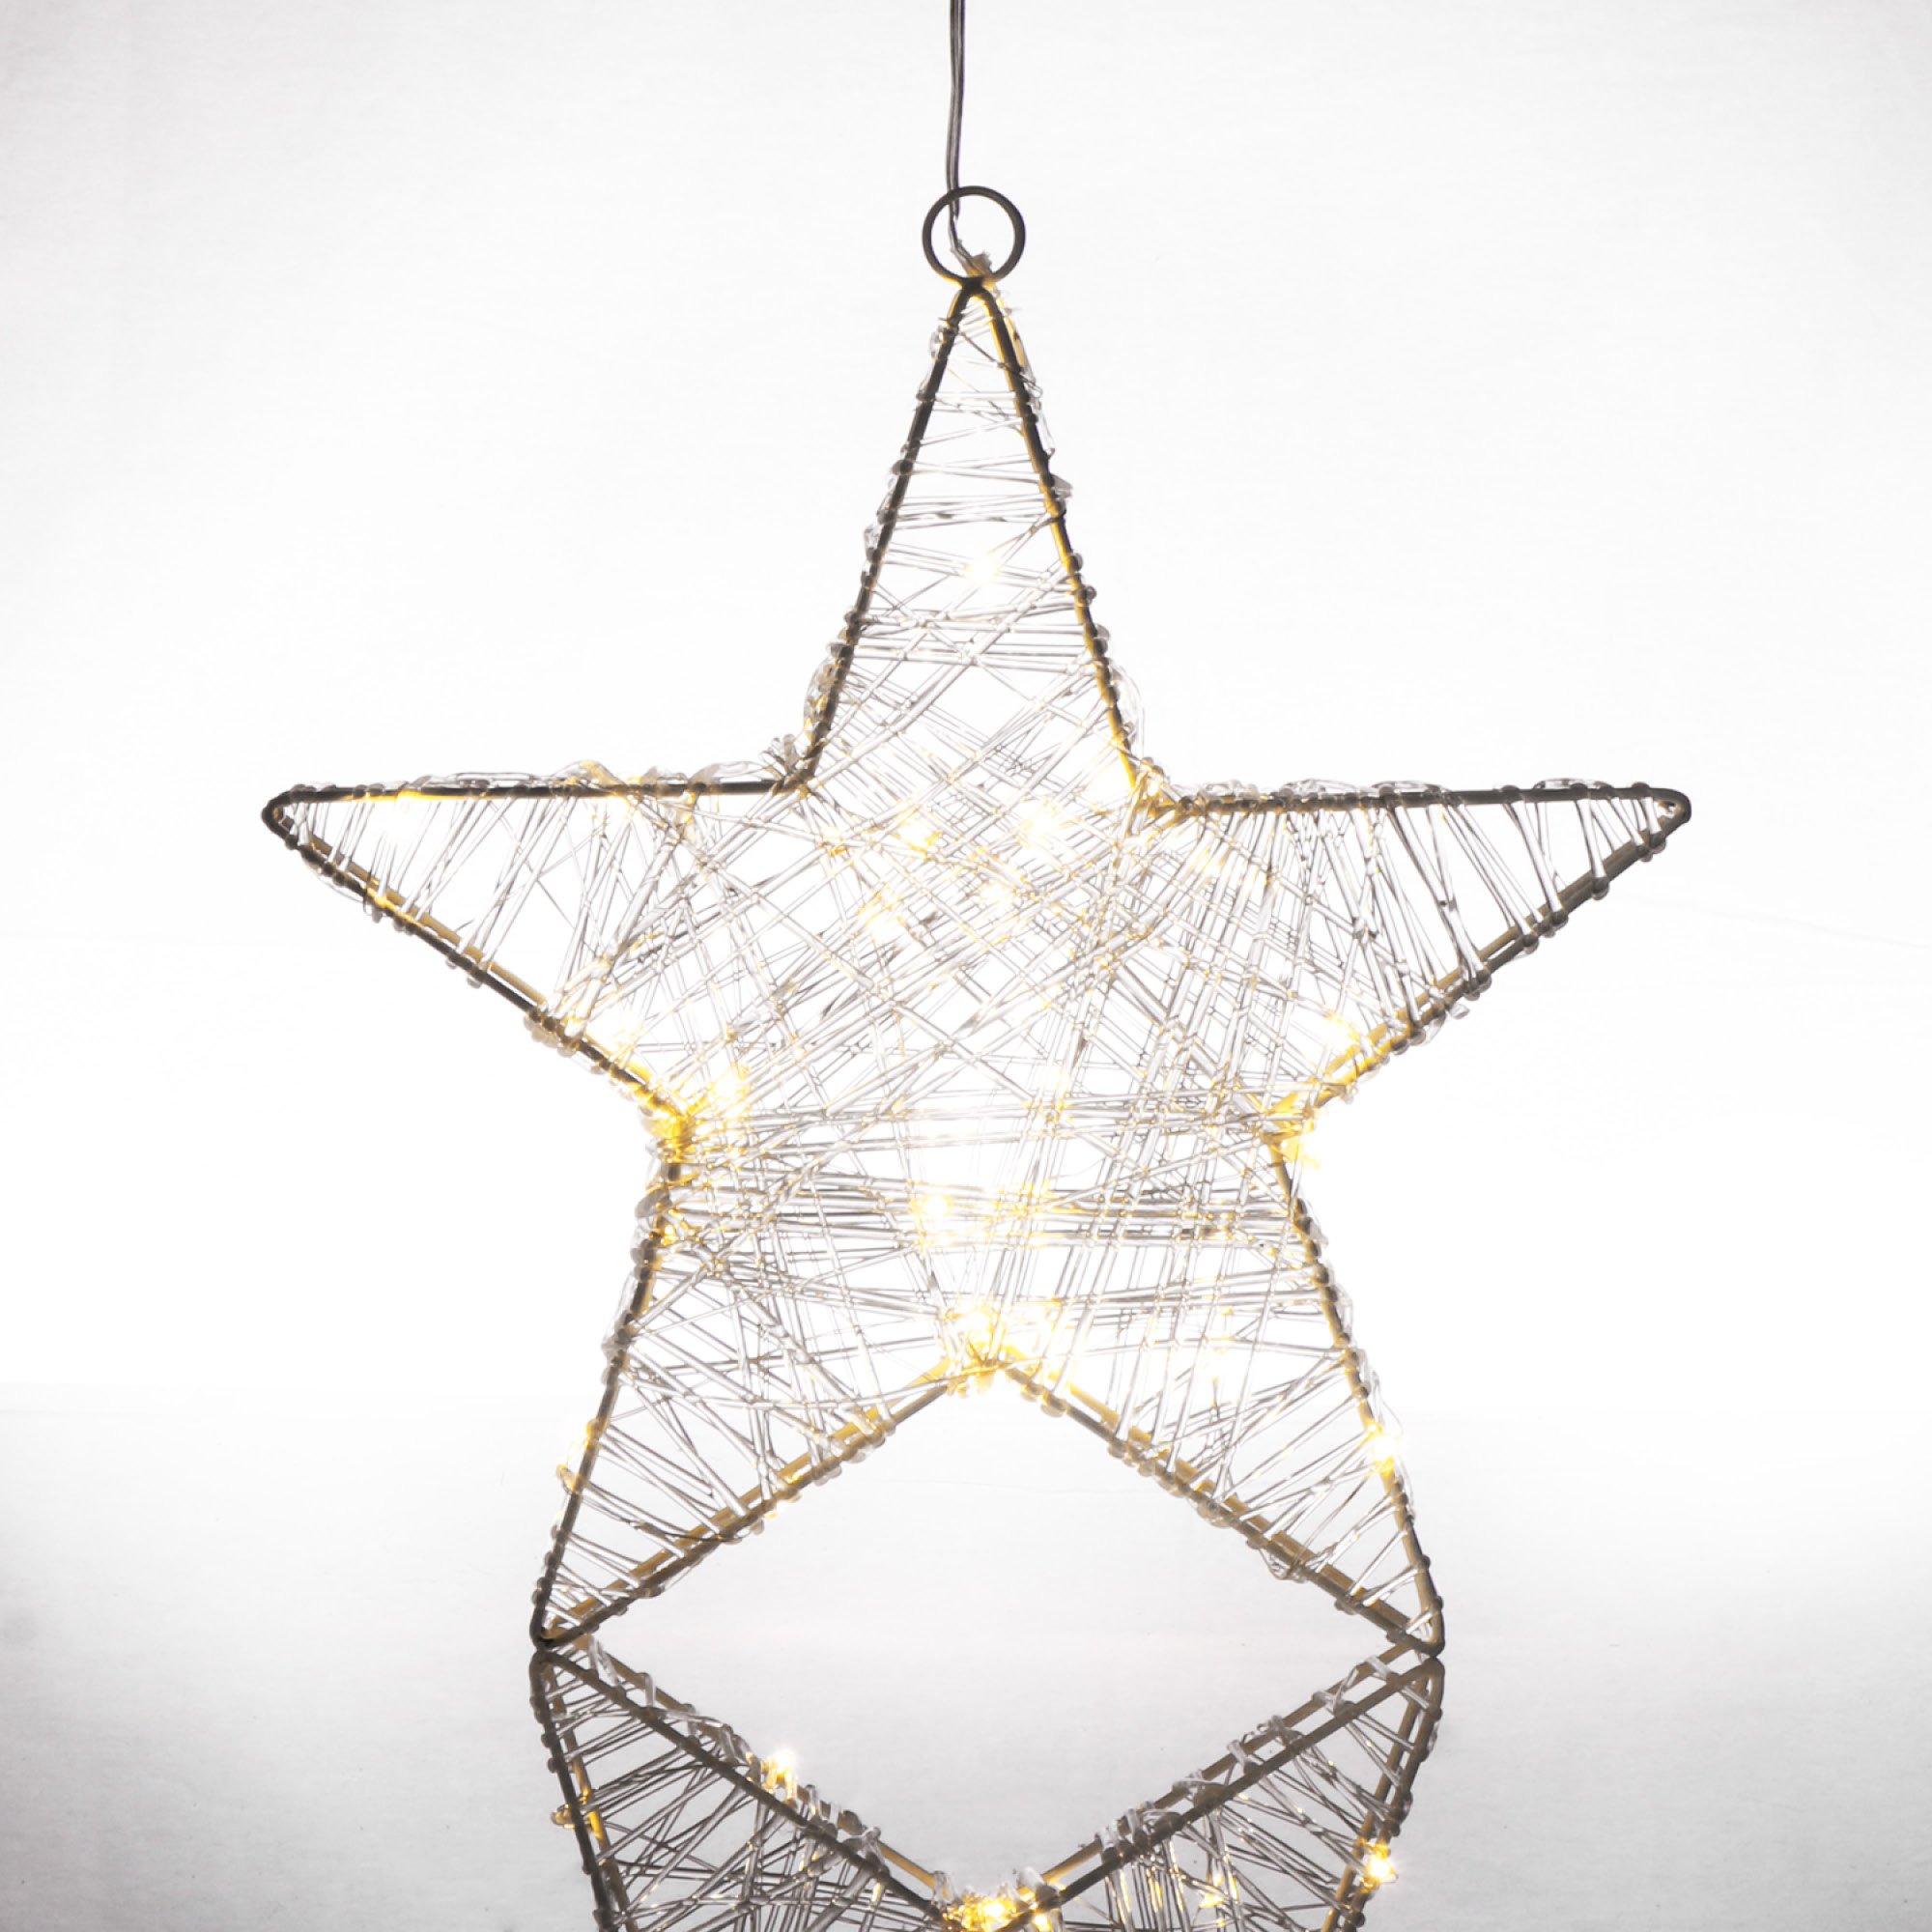 Weihnachtsstern mit Timer-Funktion - LED Stern als dekorative Beleuchtung |  eBay